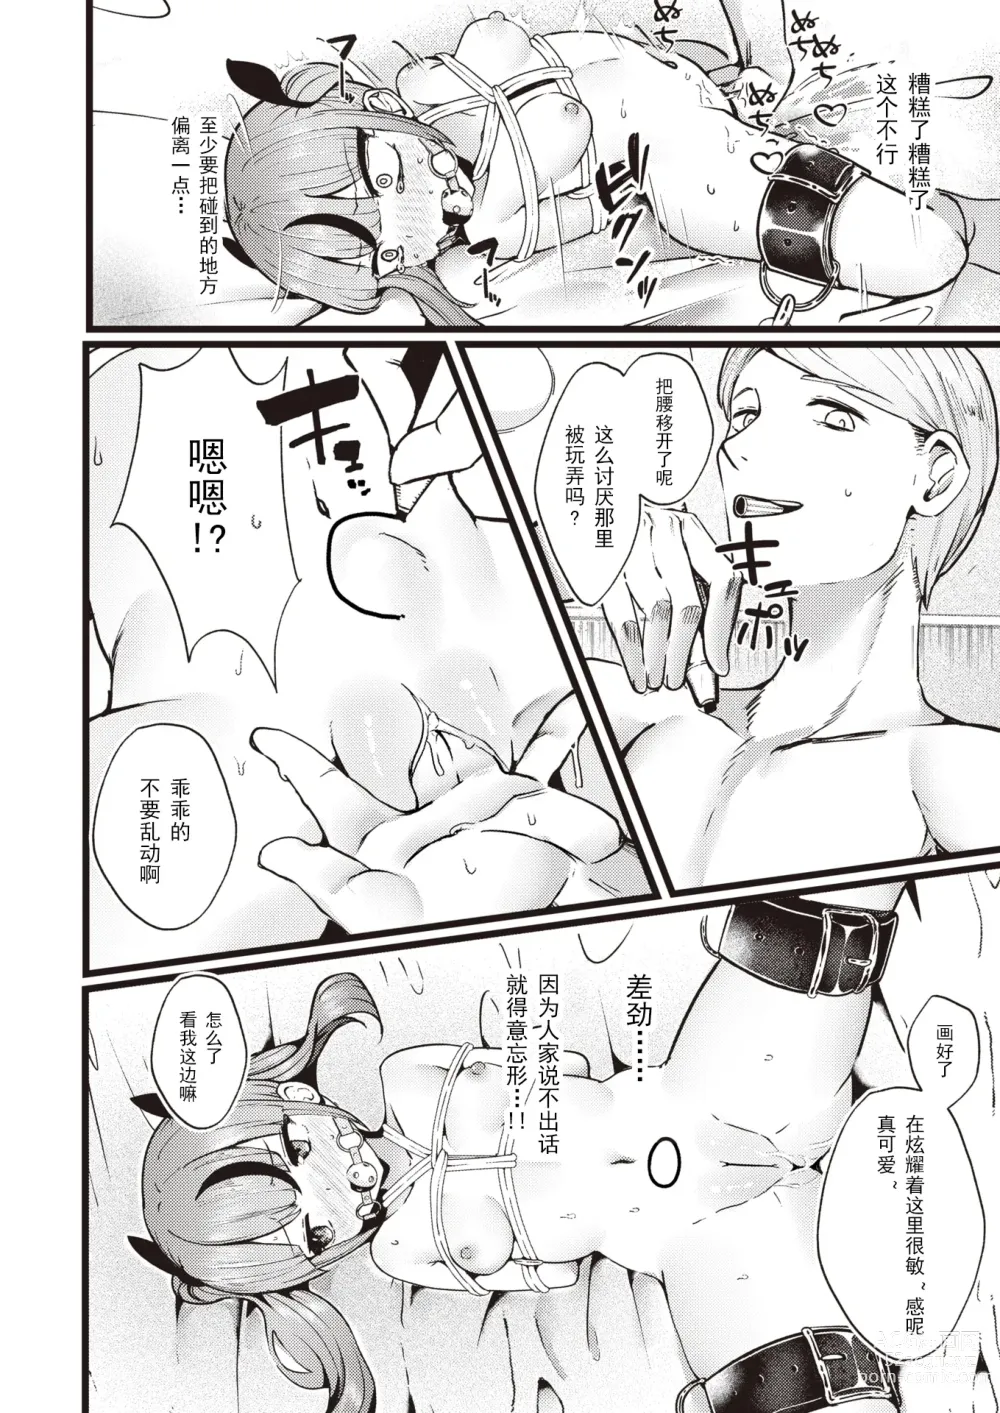 Page 12 of manga 支払いは身体で!